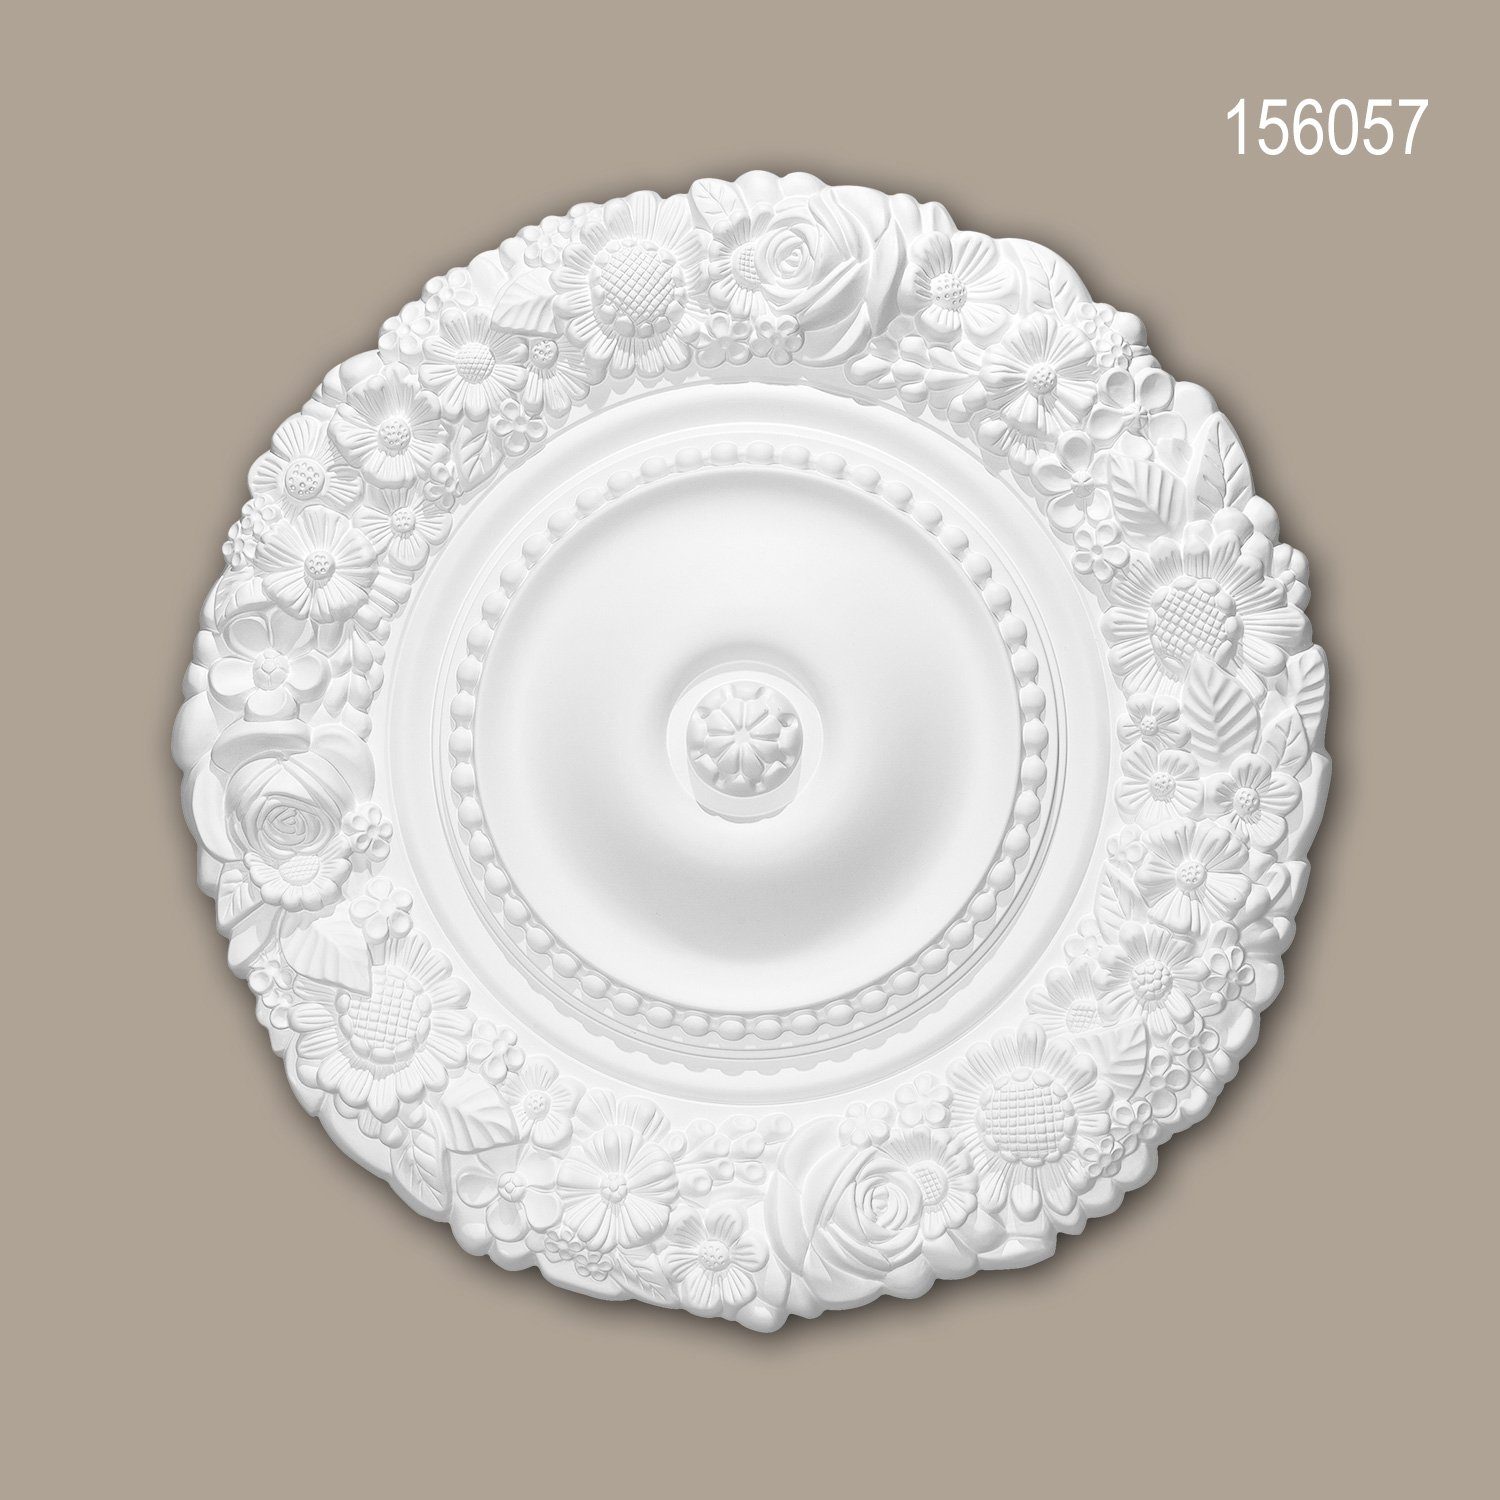 Profhome Decken-Rosette 156057 (Rosette, 1 St., Deckenrosette, Medallion, Stuckrosette, Deckenelement, Zierelement, Durchmesser 54,5 cm), weiß, vorgrundiert, Stil: Rokoko / Barock